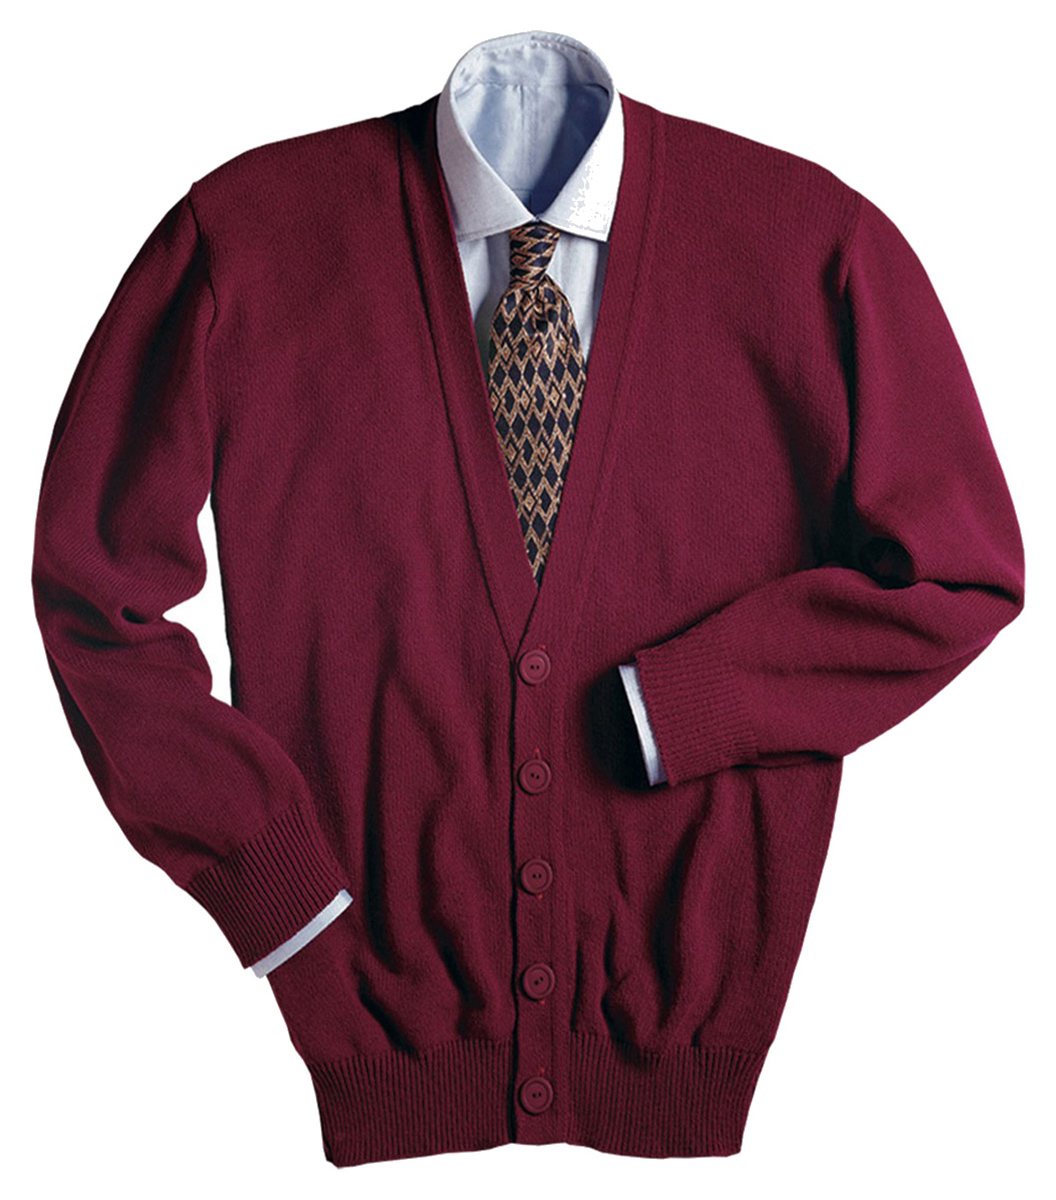 Edwards V-Neck Button Acrylic Cardigan Sweater